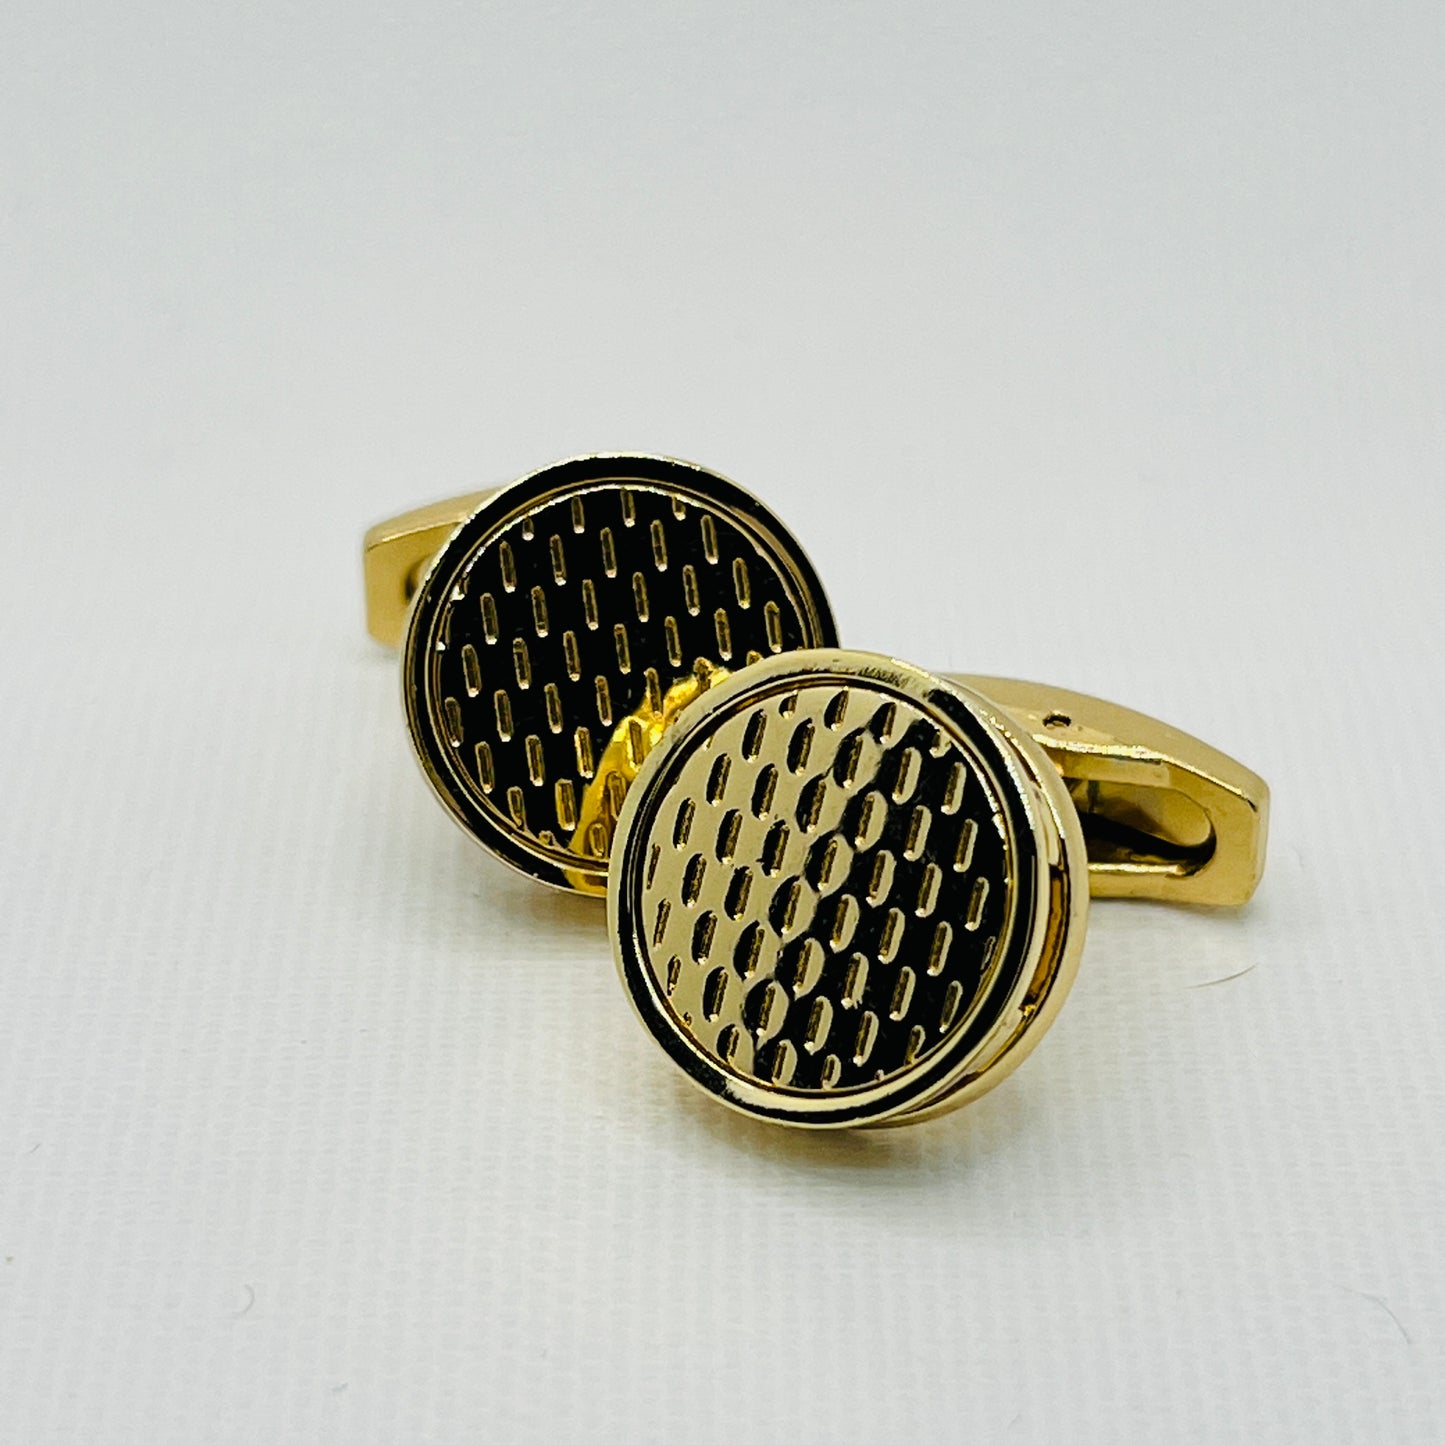 Tasker & Shaw | Luxury Menswear | Round gold coloured textured cufflinks